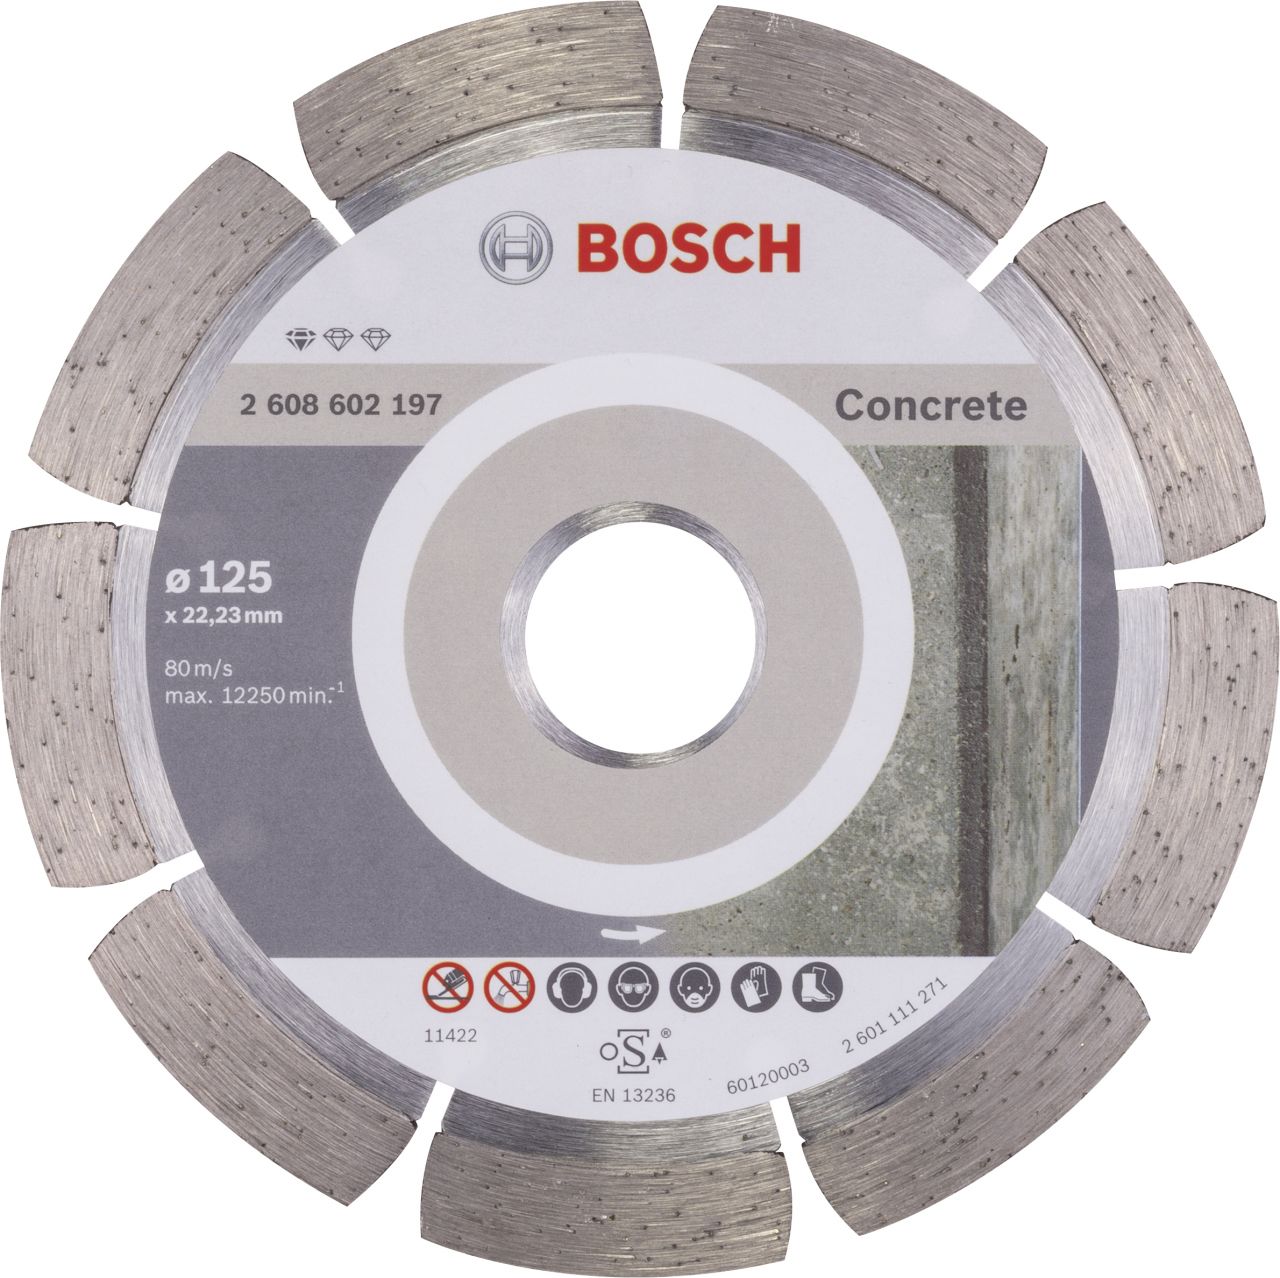 Bosch Trennscheibe 125 x 22,23 mm Diamant Beton Standard Concret von Bosch